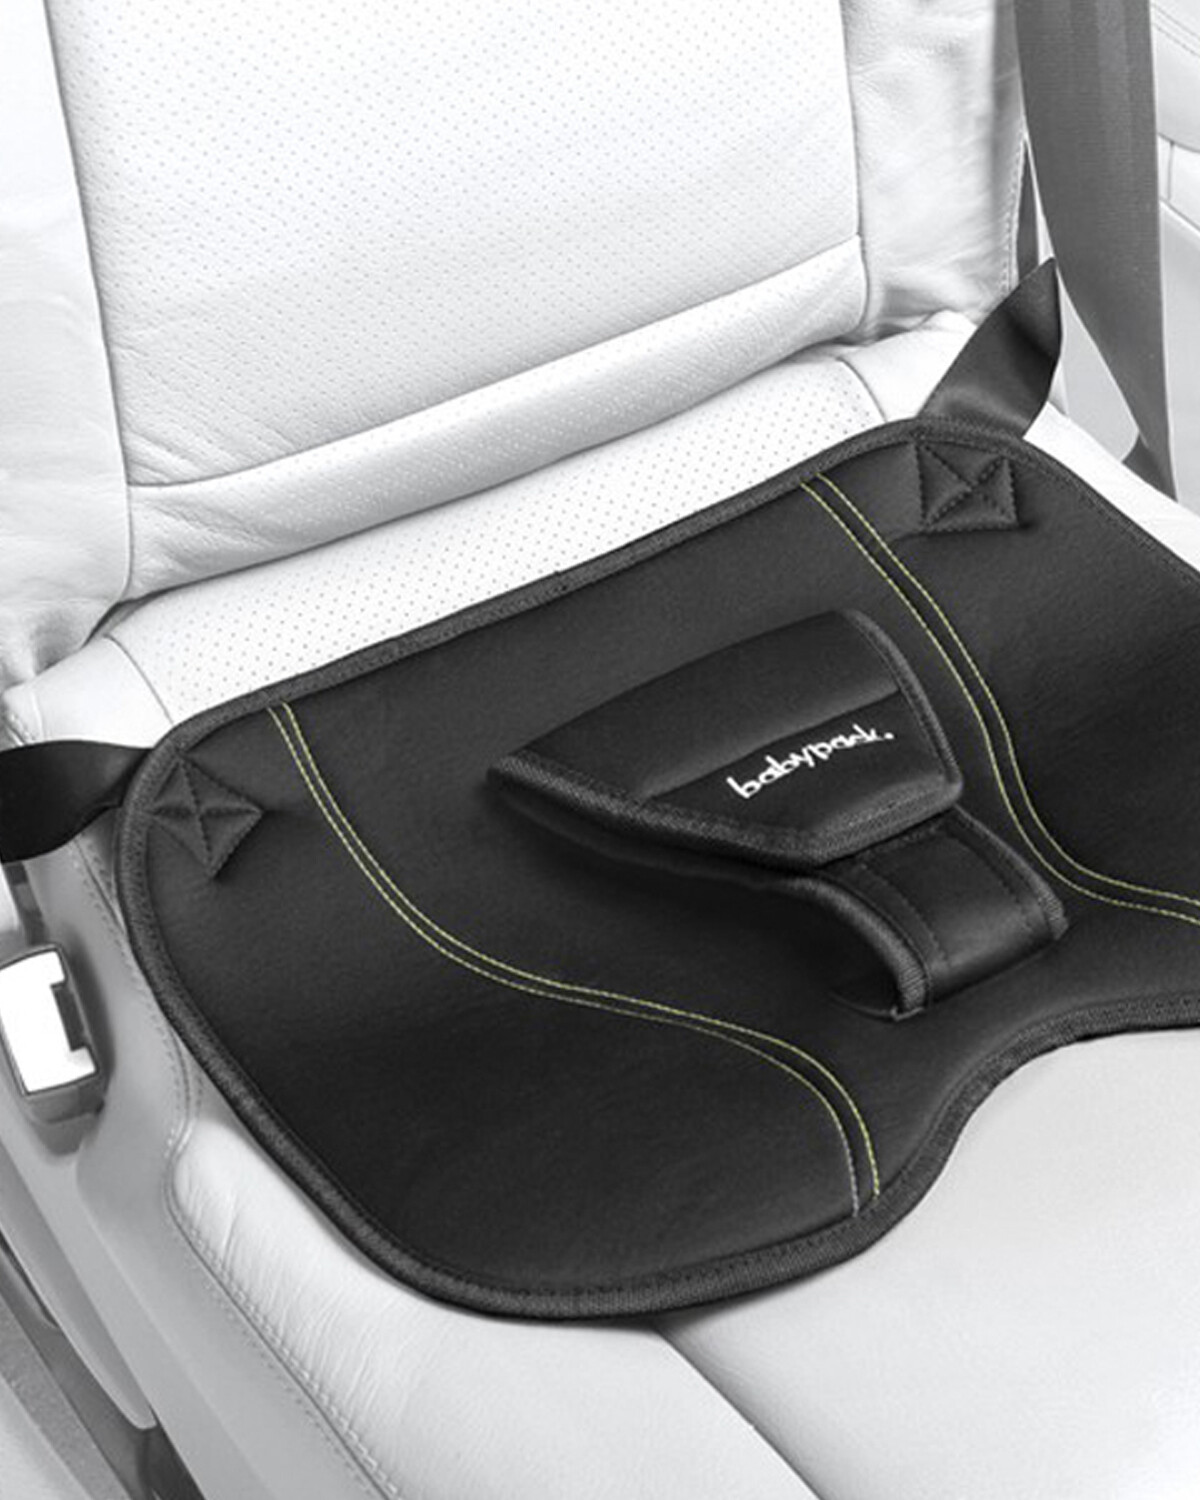 Cinturón seguridad embarazo babypack en el coche